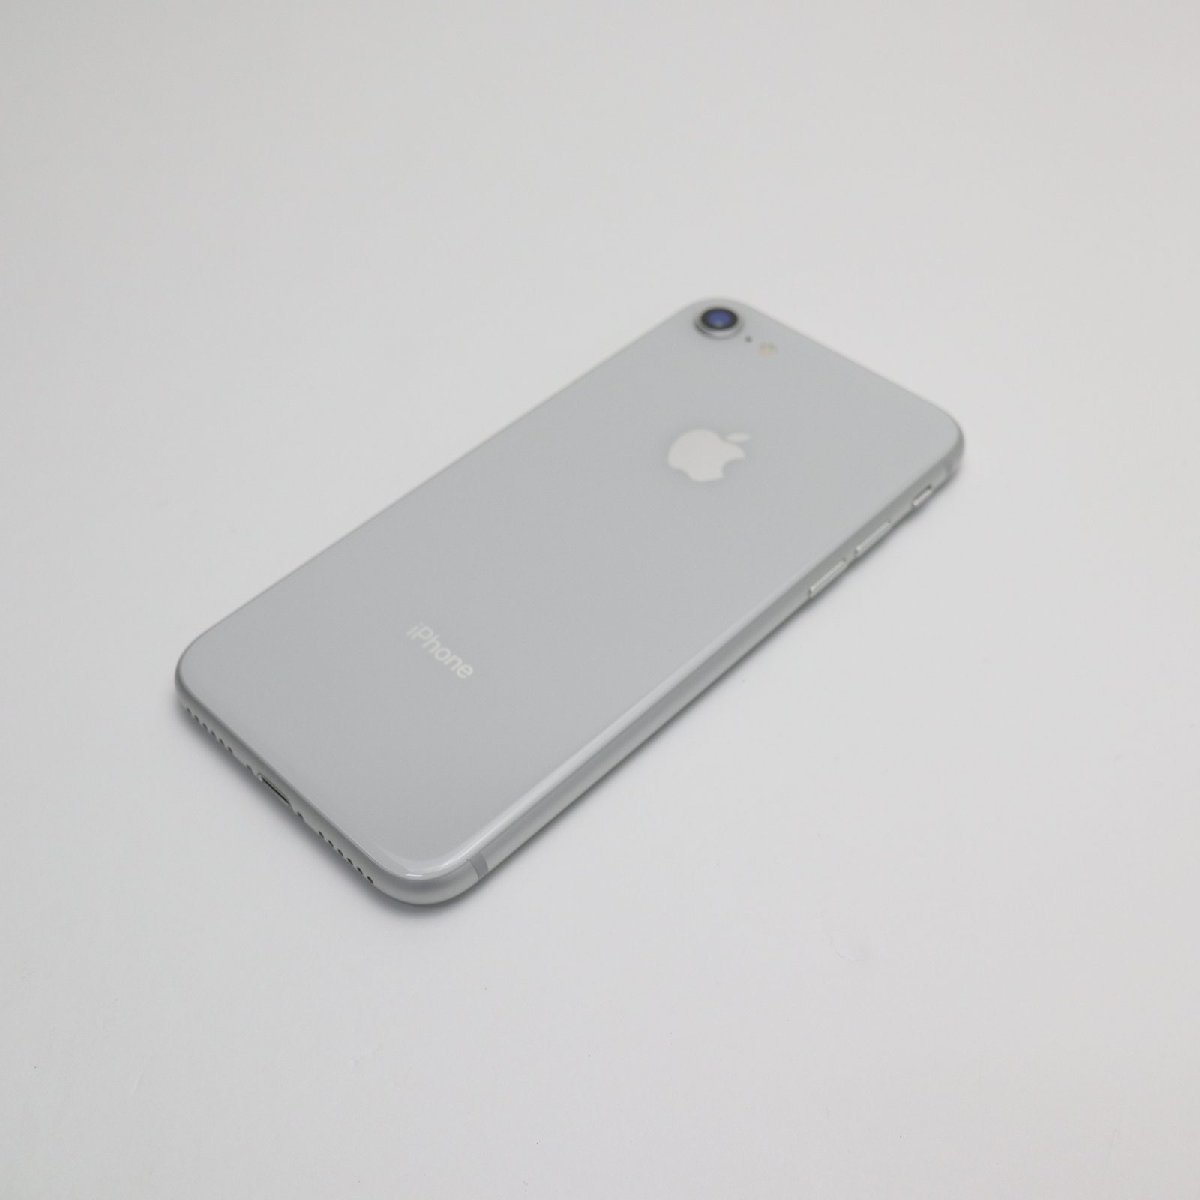 ≪超目玉☆12月≫ 超美品 SIMフリー iPhone8 64GB シルバー 即日発送